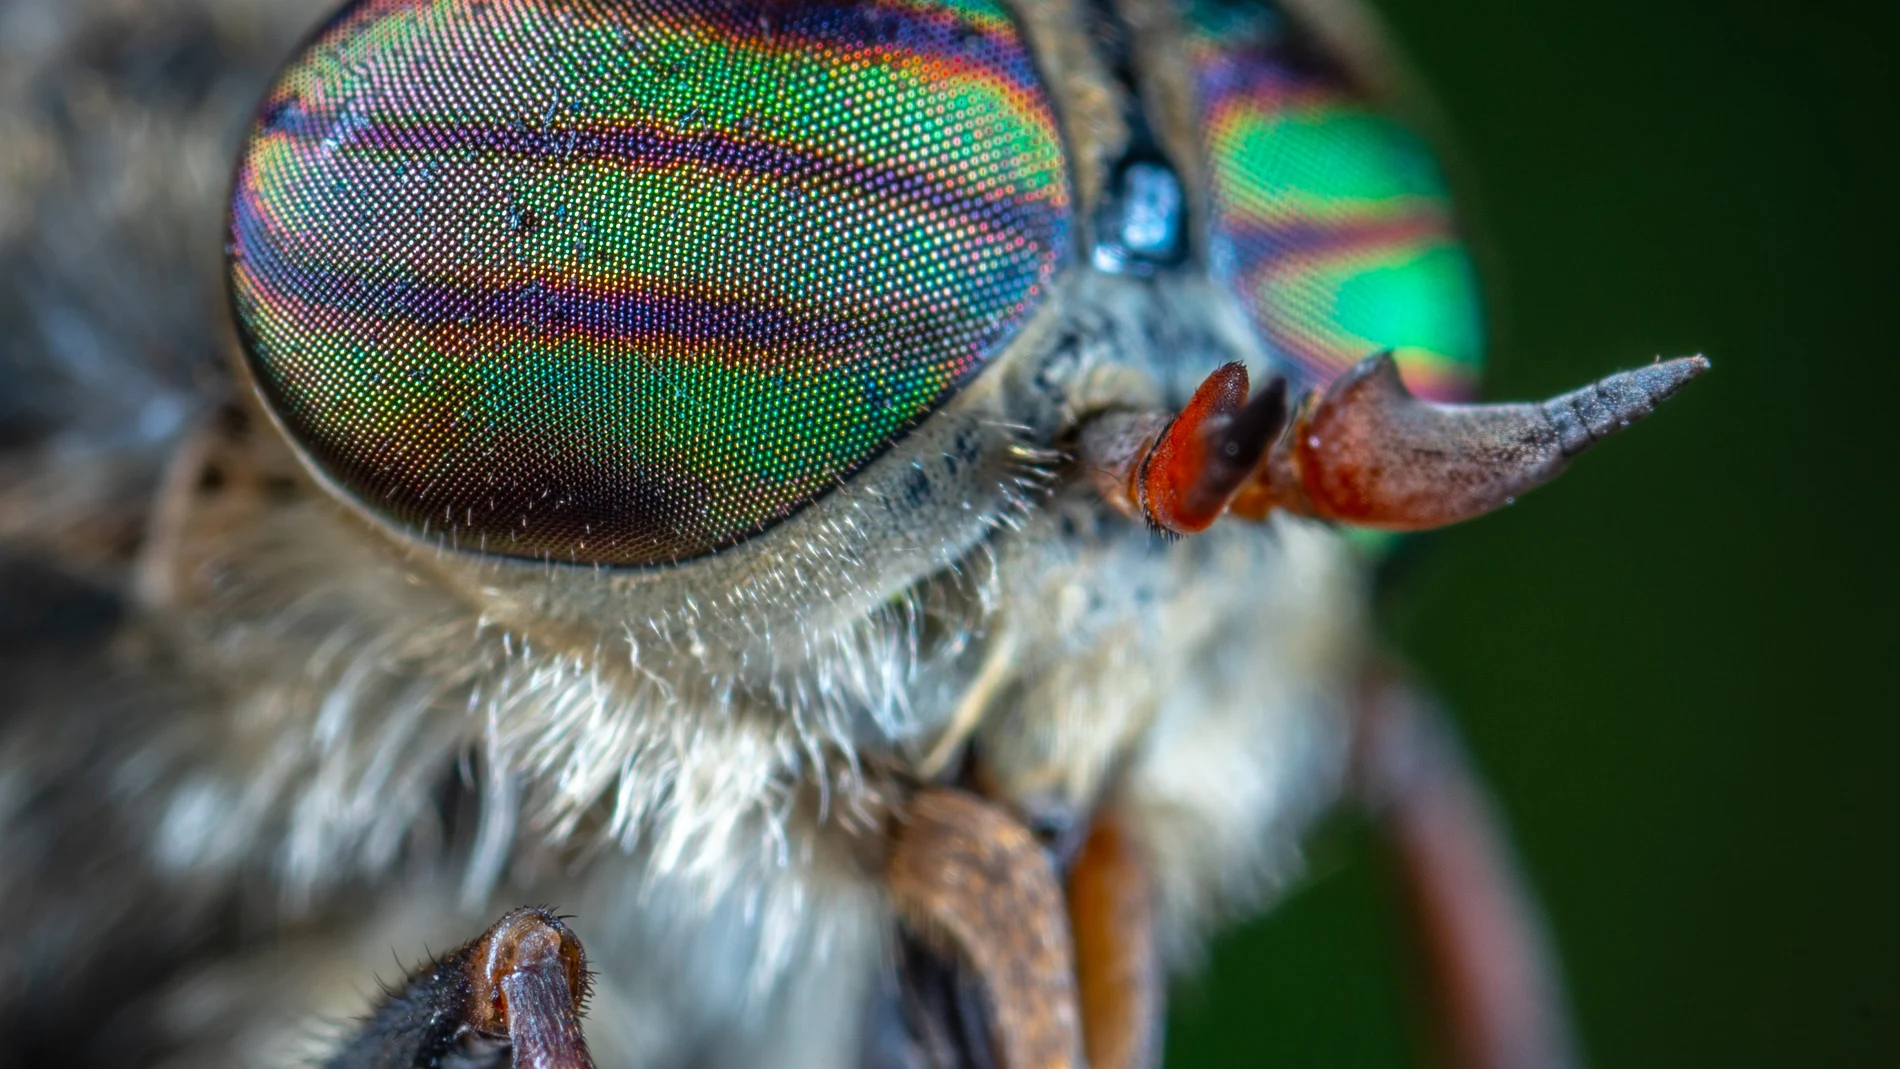 Los ojos de muchos insectos son capaces de repeler el polvo y los patógenos